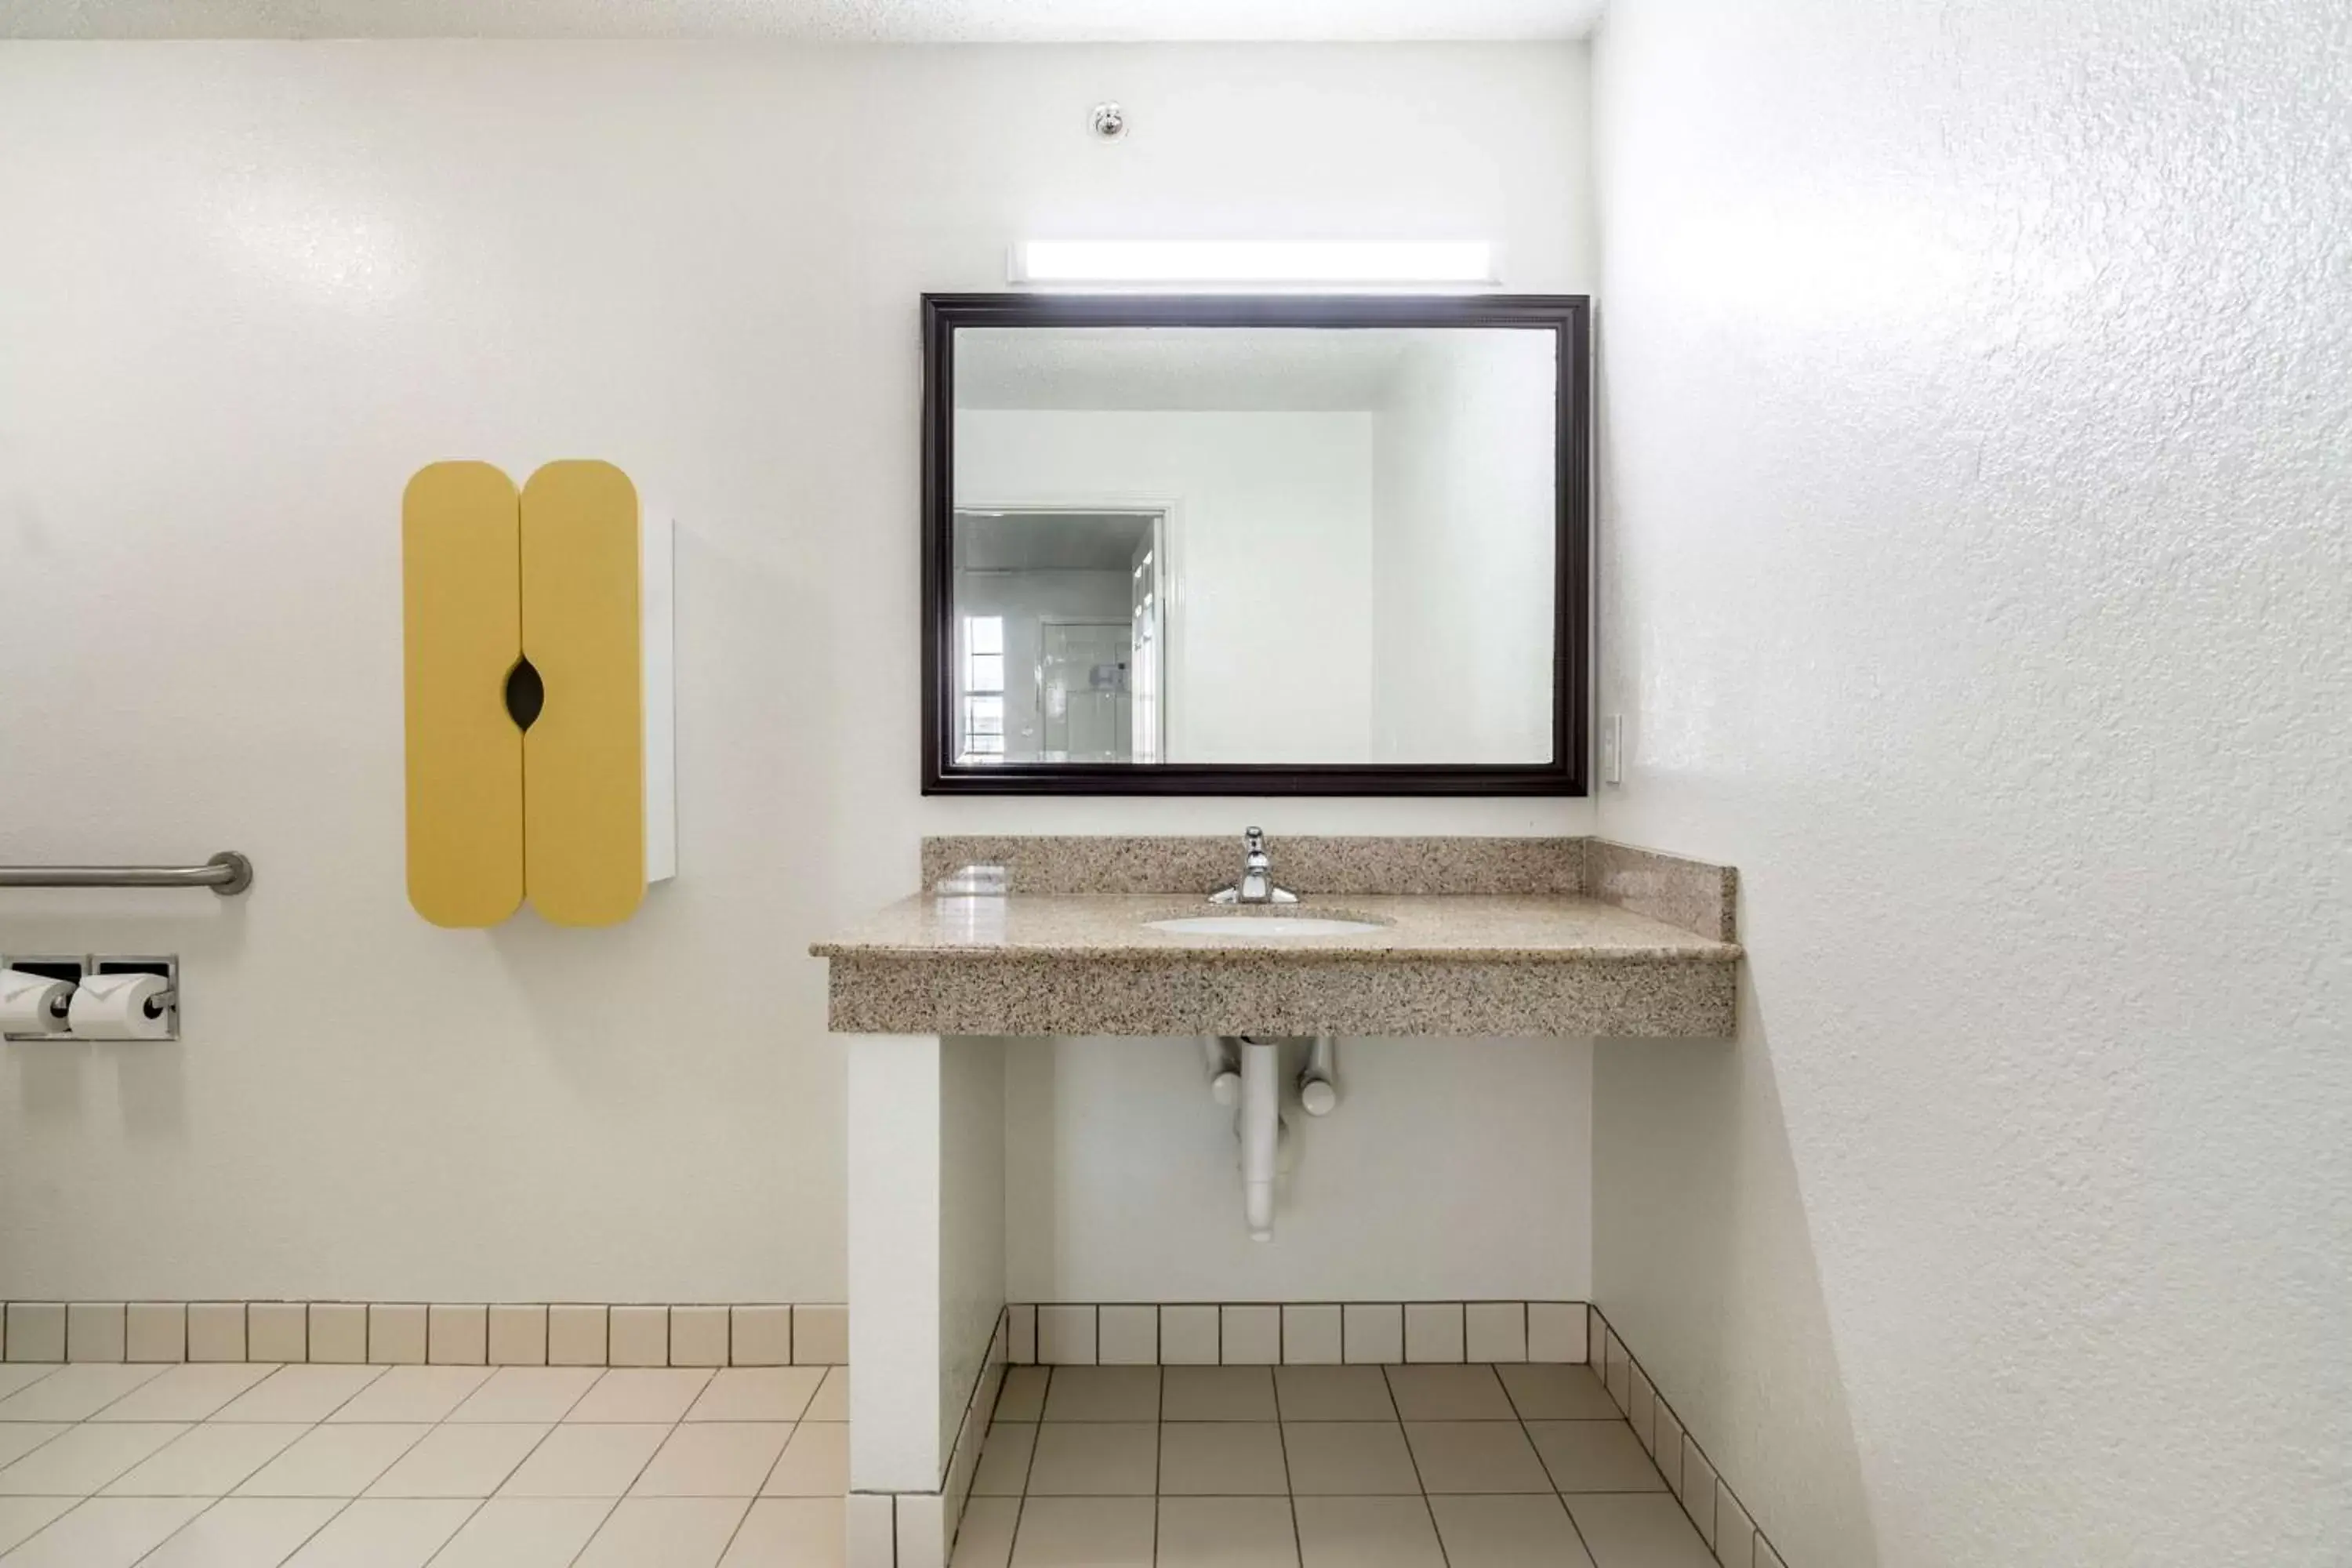 Photo of the whole room, Bathroom in Studio 6-Plano, TX - Dallas - Plano Medical Center